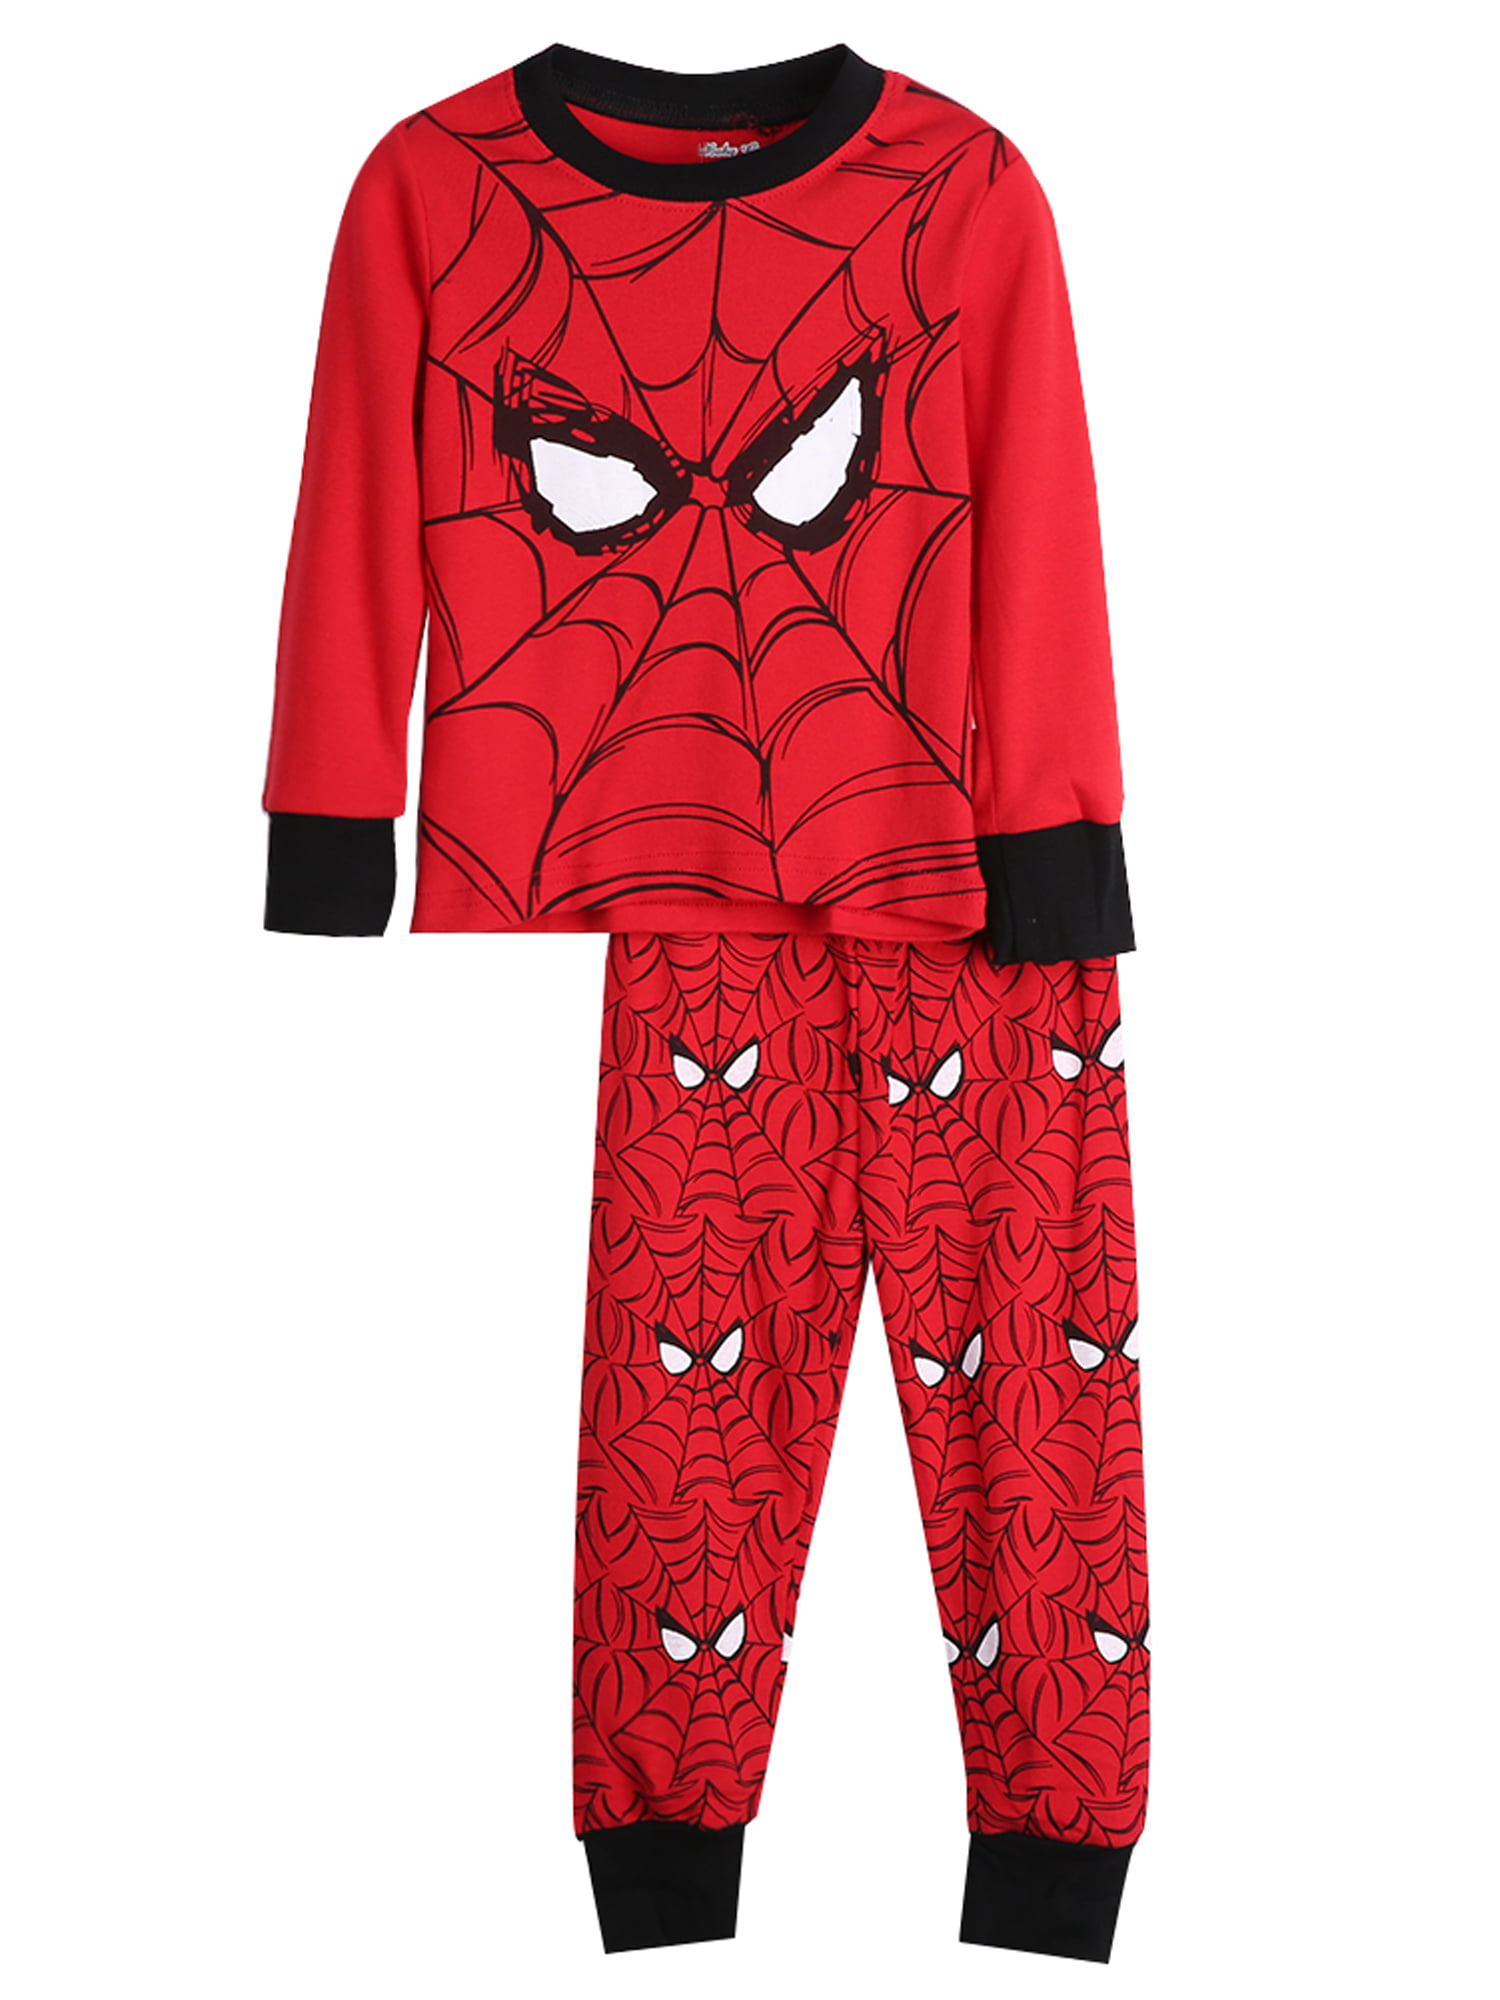 GERGER BO Spiderman Pajamas,Boys Pajamas Kids 100% Cotton Cartoon Sleepwears